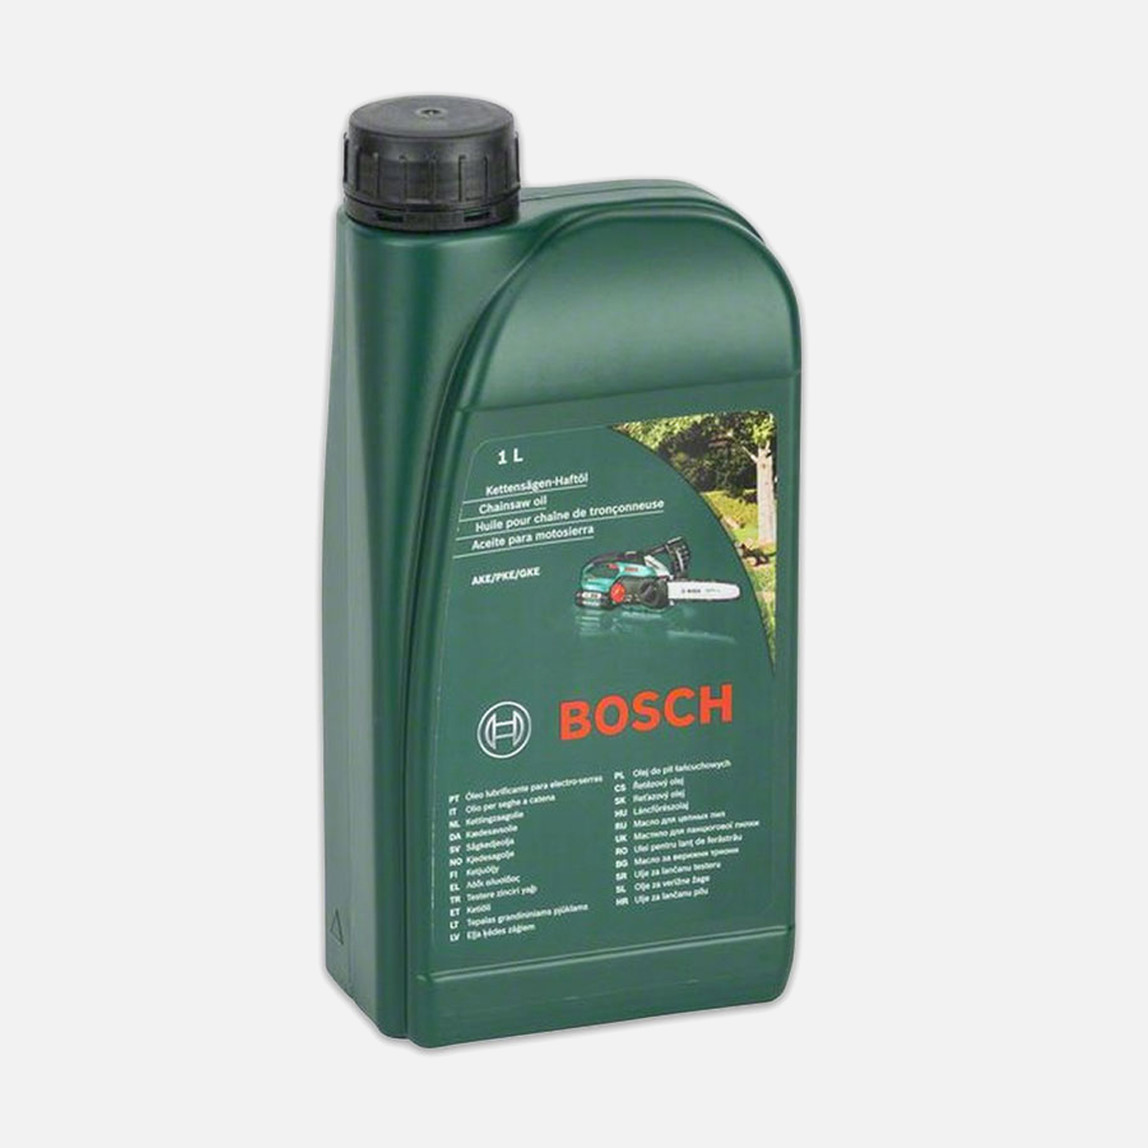    Bosch 1Lt Zincir Yağı Ake'Ler İçin  